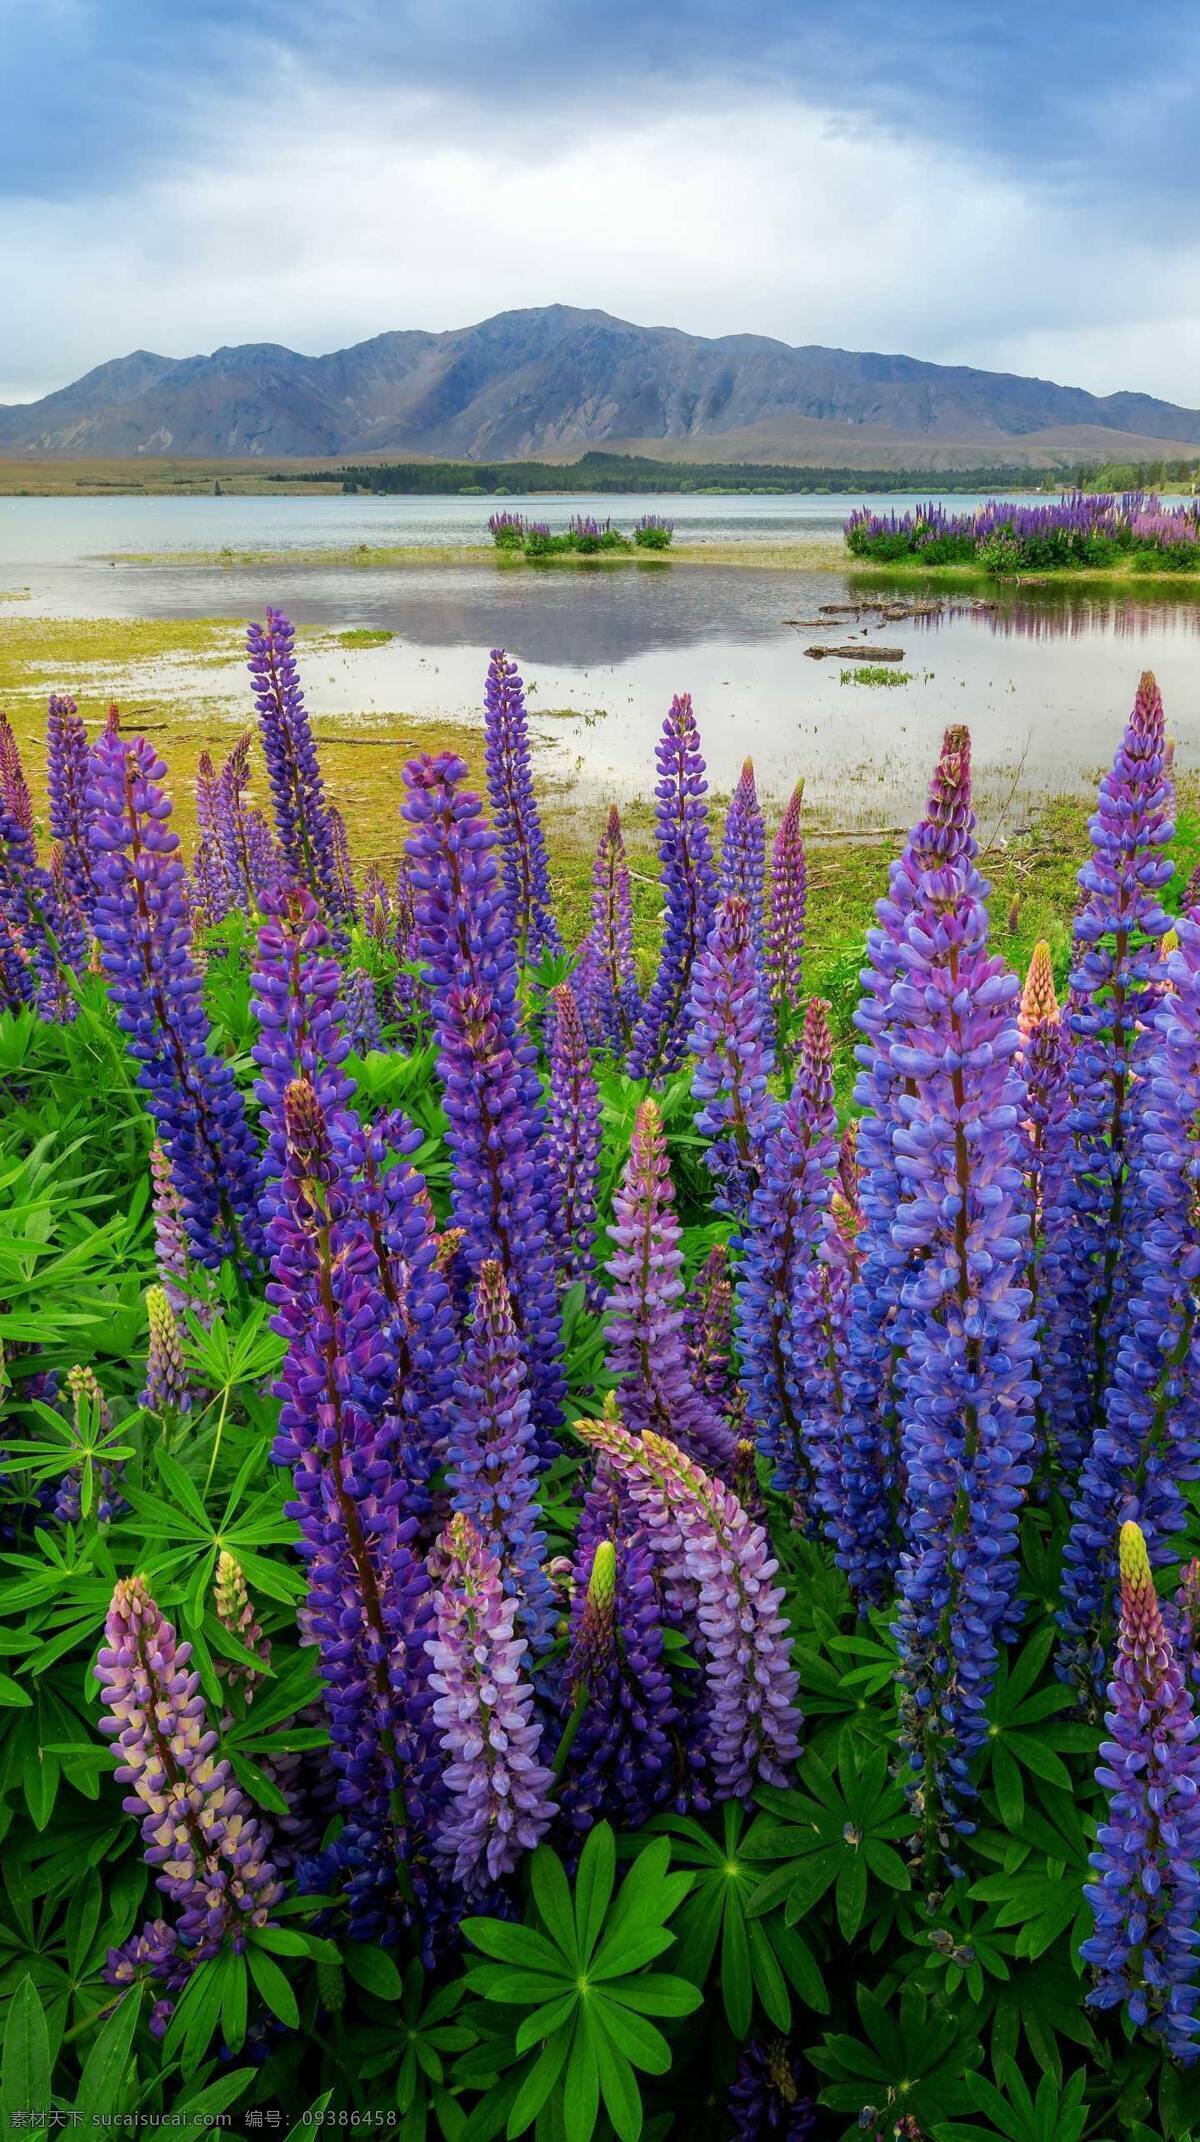 花卉 紫罗兰 紫色 花朵 紫色花朵 湿地公园 旅游摄影 旅游 壁纸 手机壁纸 手机高清壁纸 高清壁纸 自然景观 建筑景观